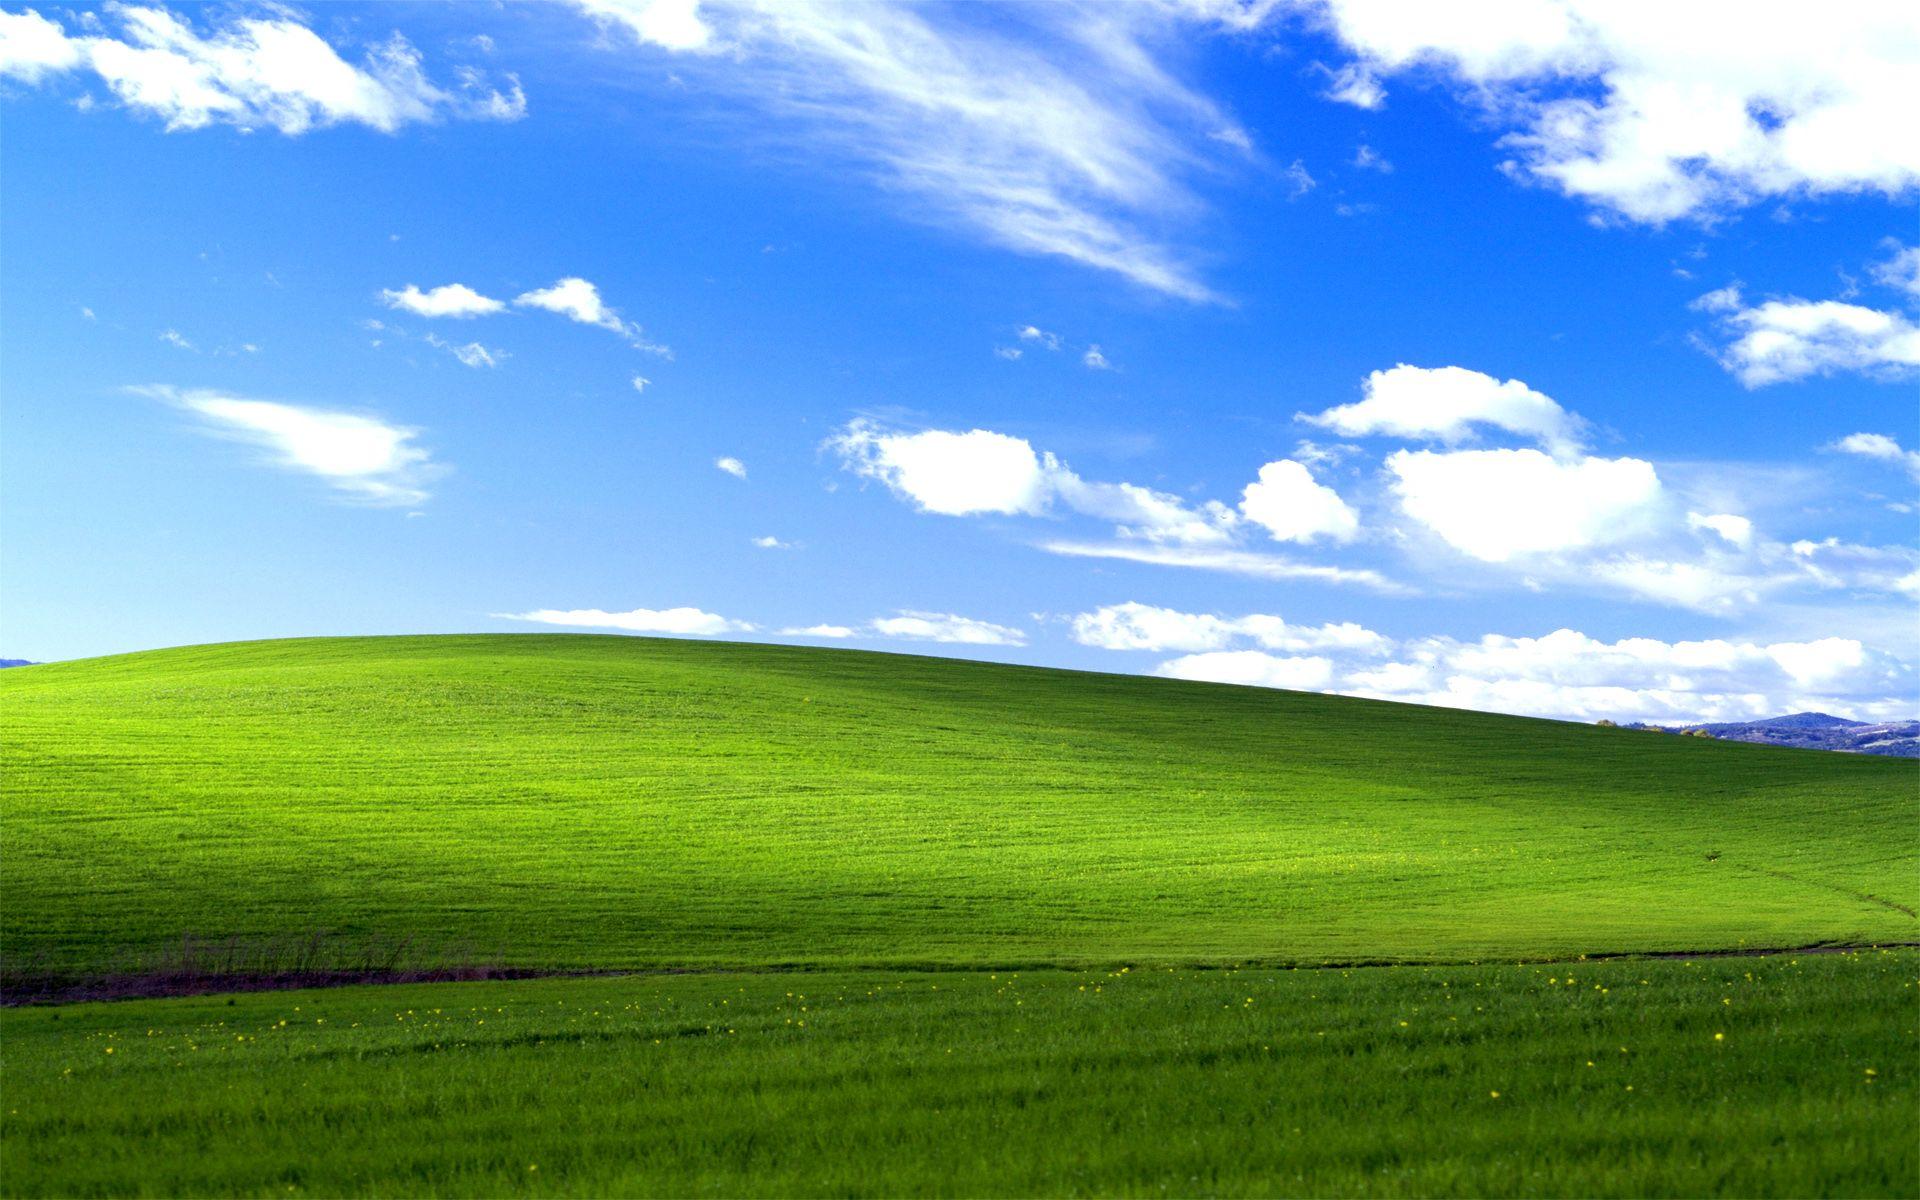 Hãy tách thoải mái với hình nền cỏ Windows XP tuyệt đẹp này trên màn hình máy tính của bạn. Sẽ không có gì hoàn hảo hơn để làm dịu đi sự căng thẳng của bạn như bầu không khí yên bình mà hình nền này mang lại.